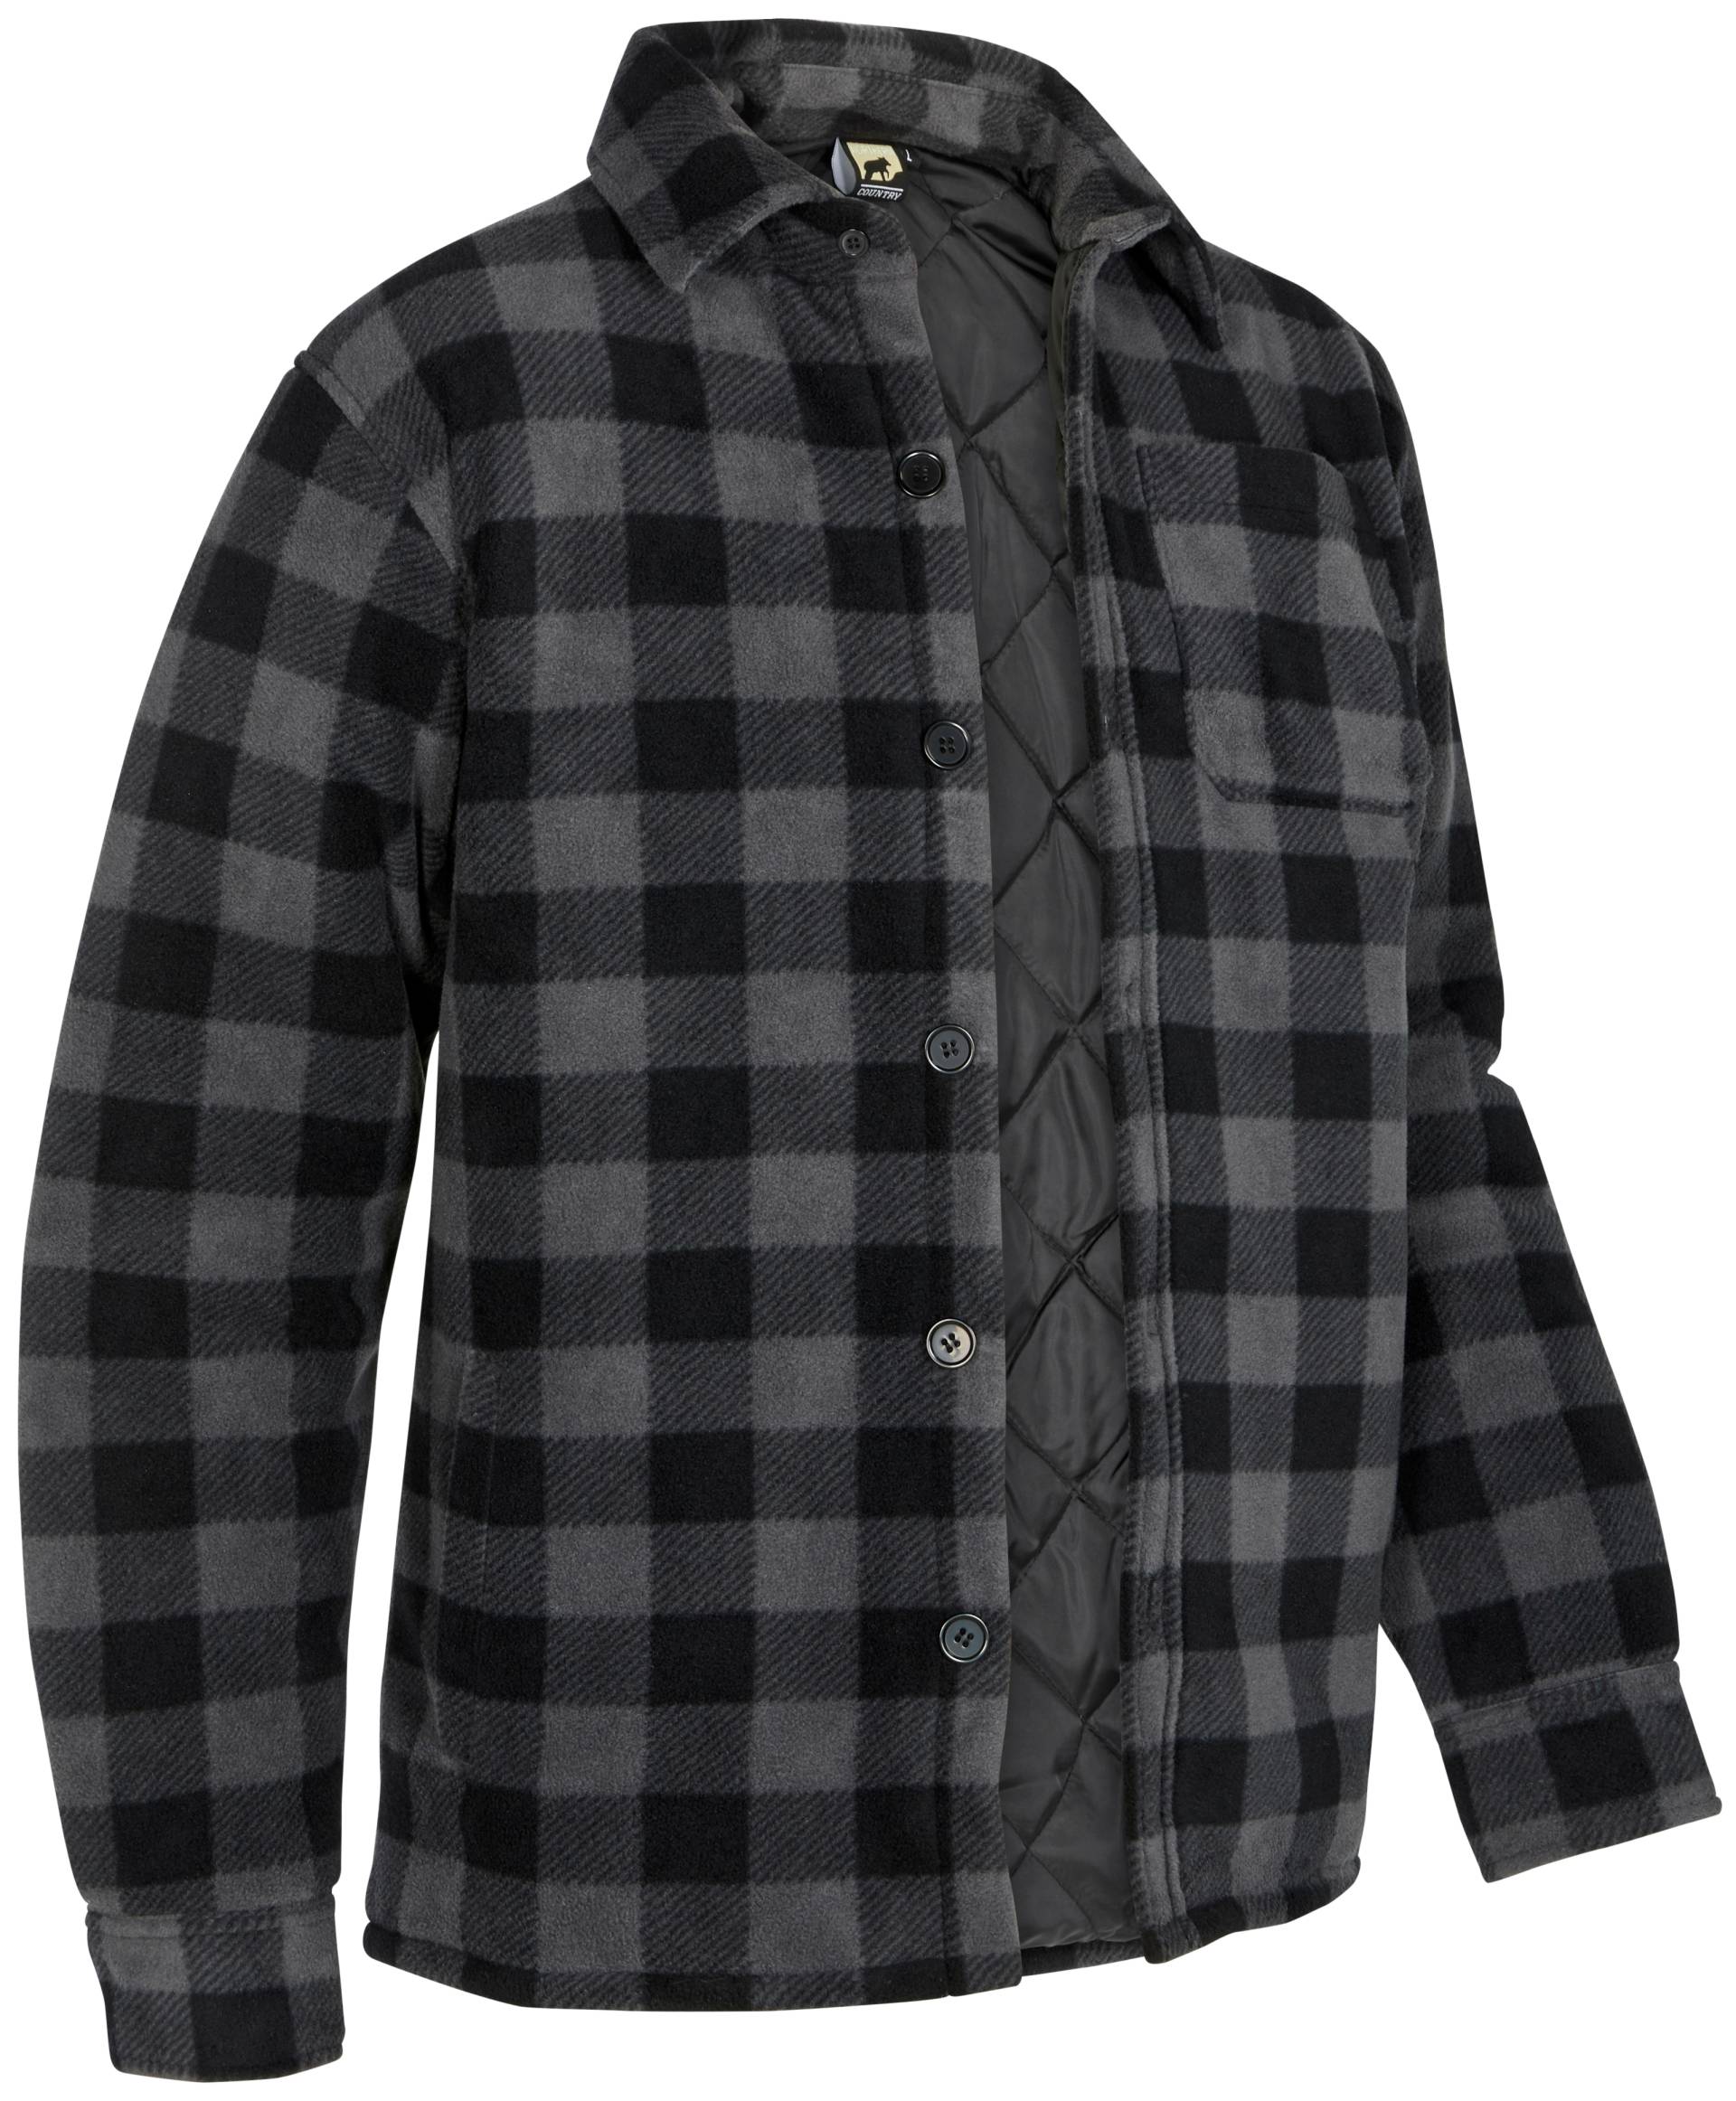 Northern Country Flanellhemd, (als Jacke offen oder Hemd zugeknöpft zu tragen) von Northern Country